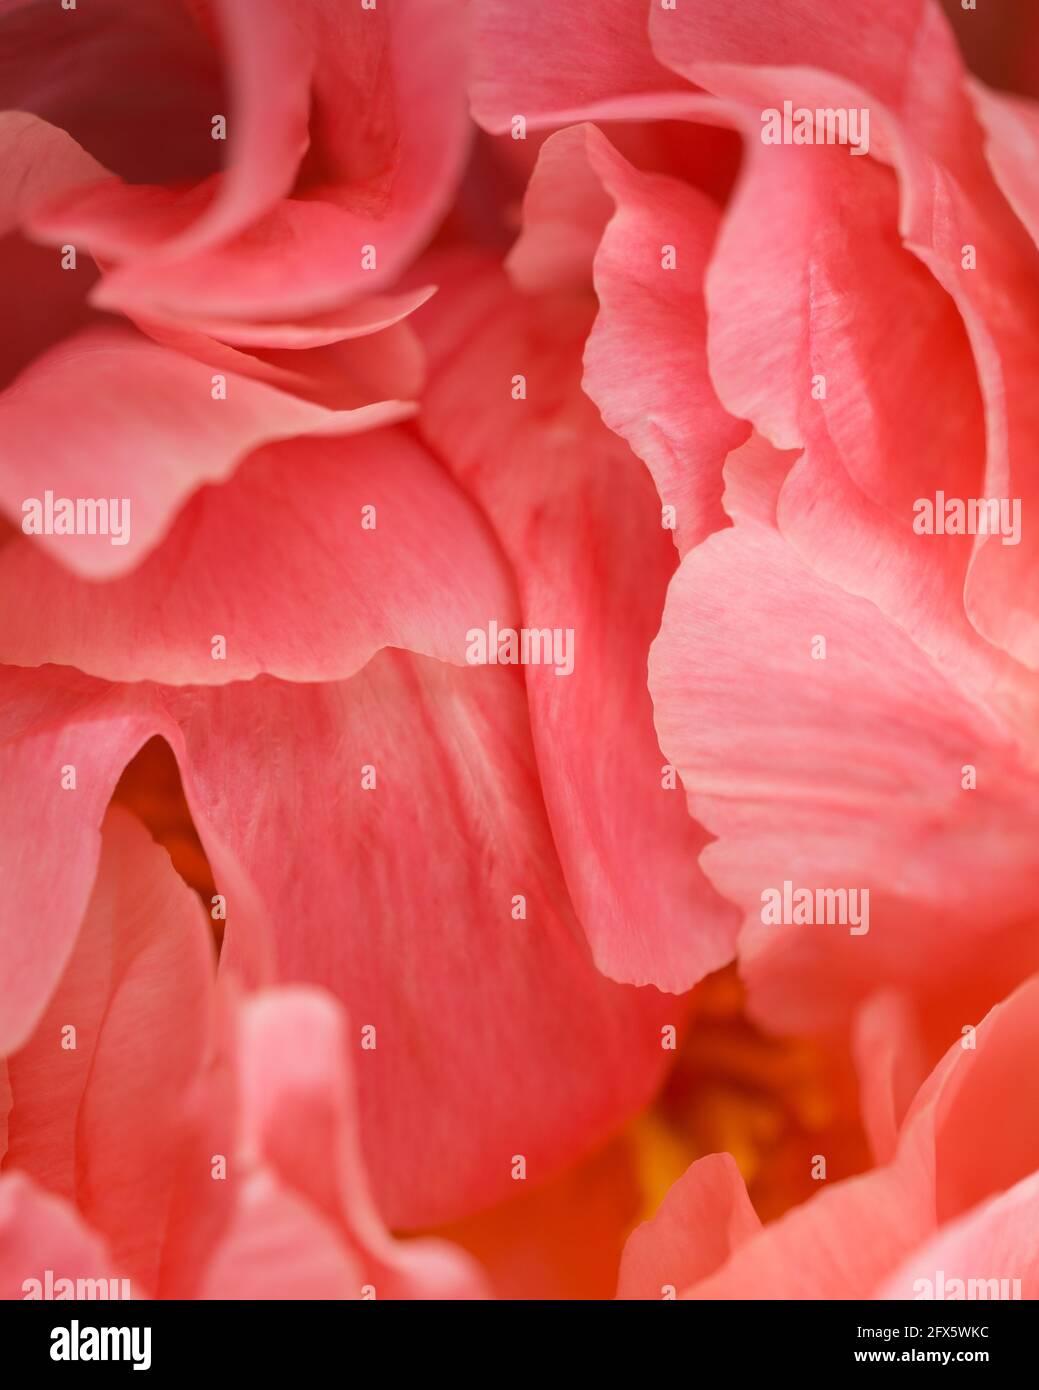 Pink peony flower petals close up Stock Photo